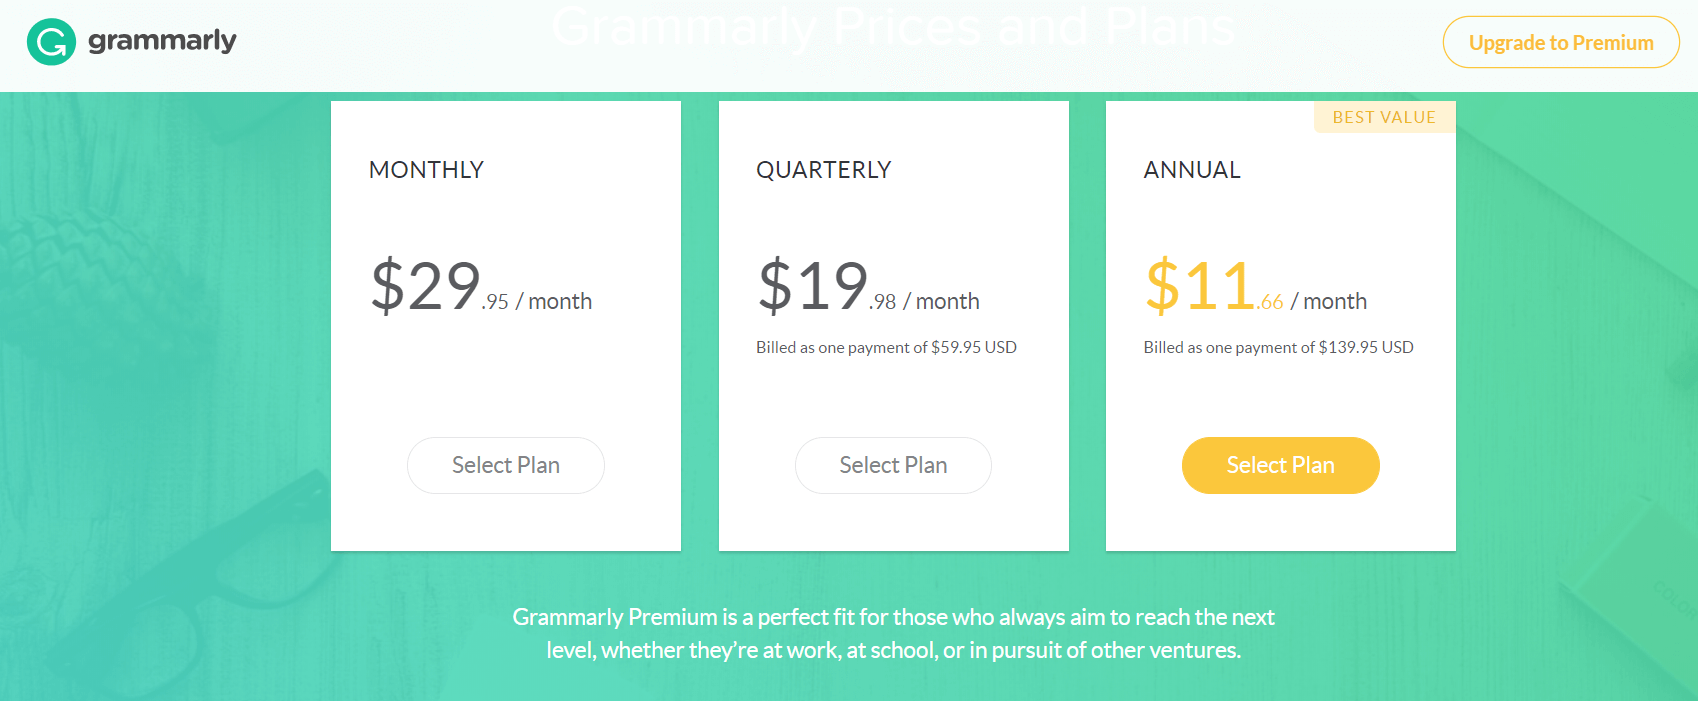 Grammarly Premium Plans